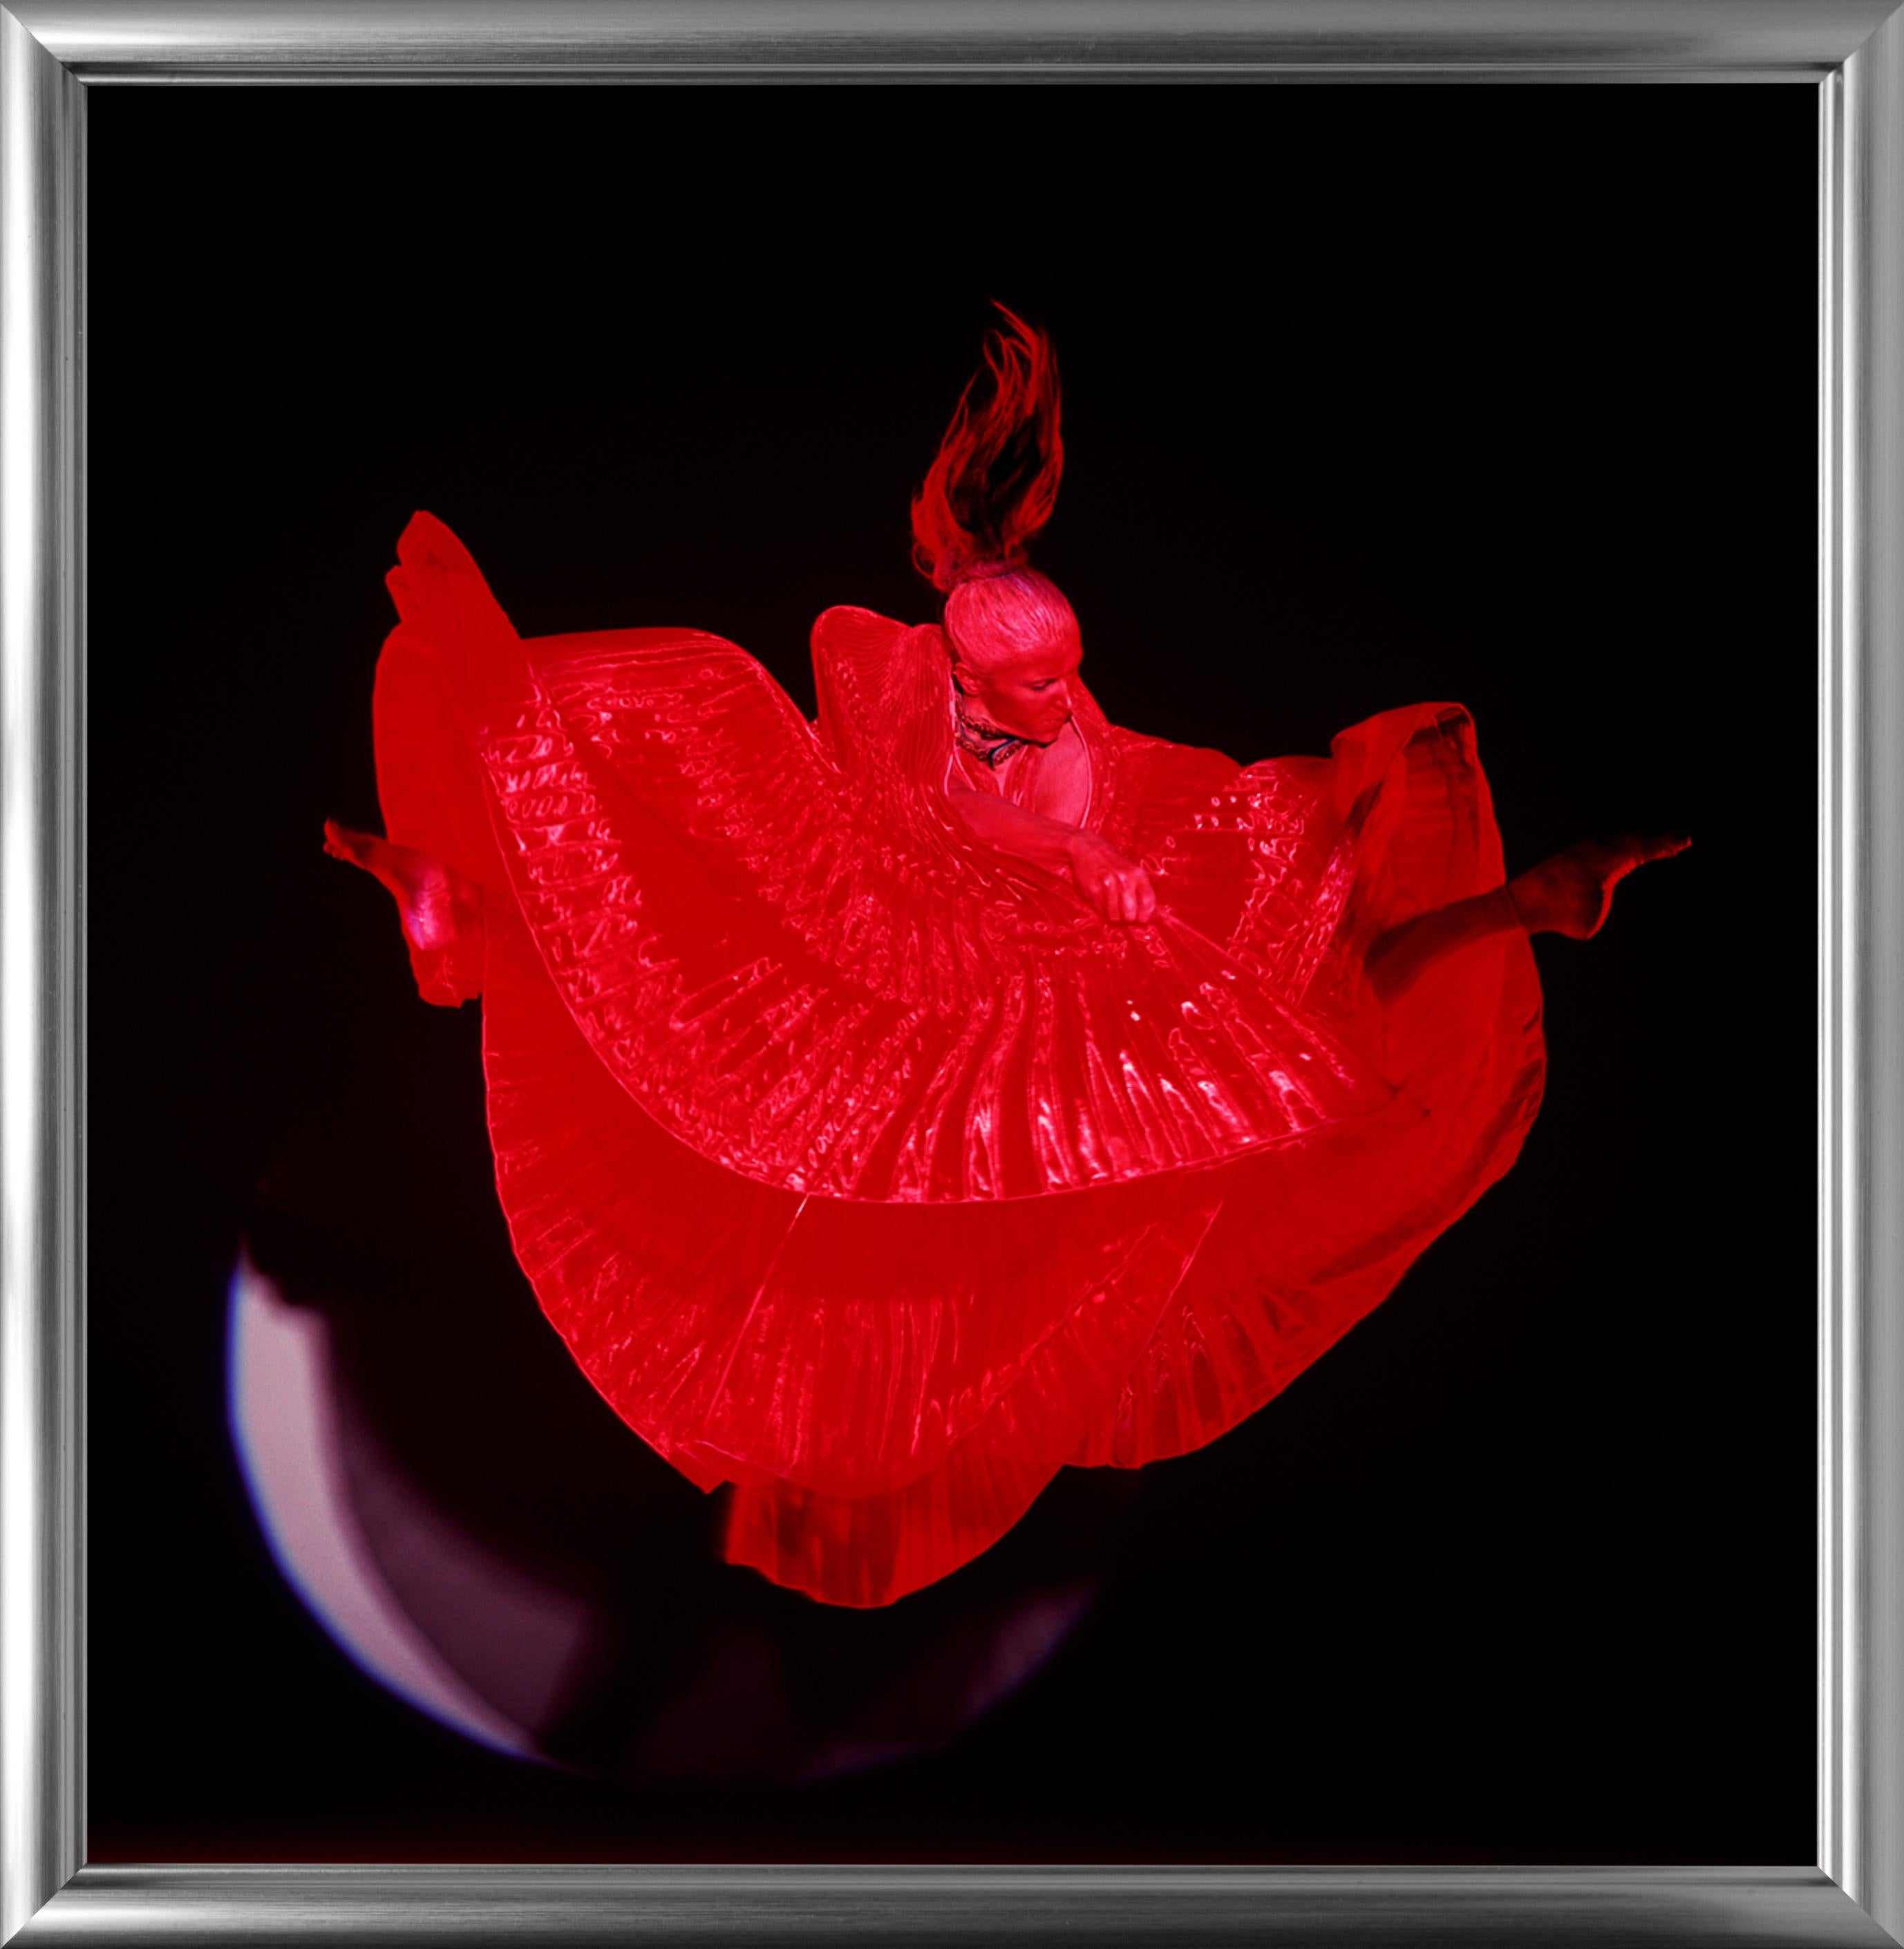 Giulia Jumping in White Circle – nacktes Foto, weibliches Model vor rotem Hintergrund (Schwarz), Figurative Photograph, von Guido Argentini